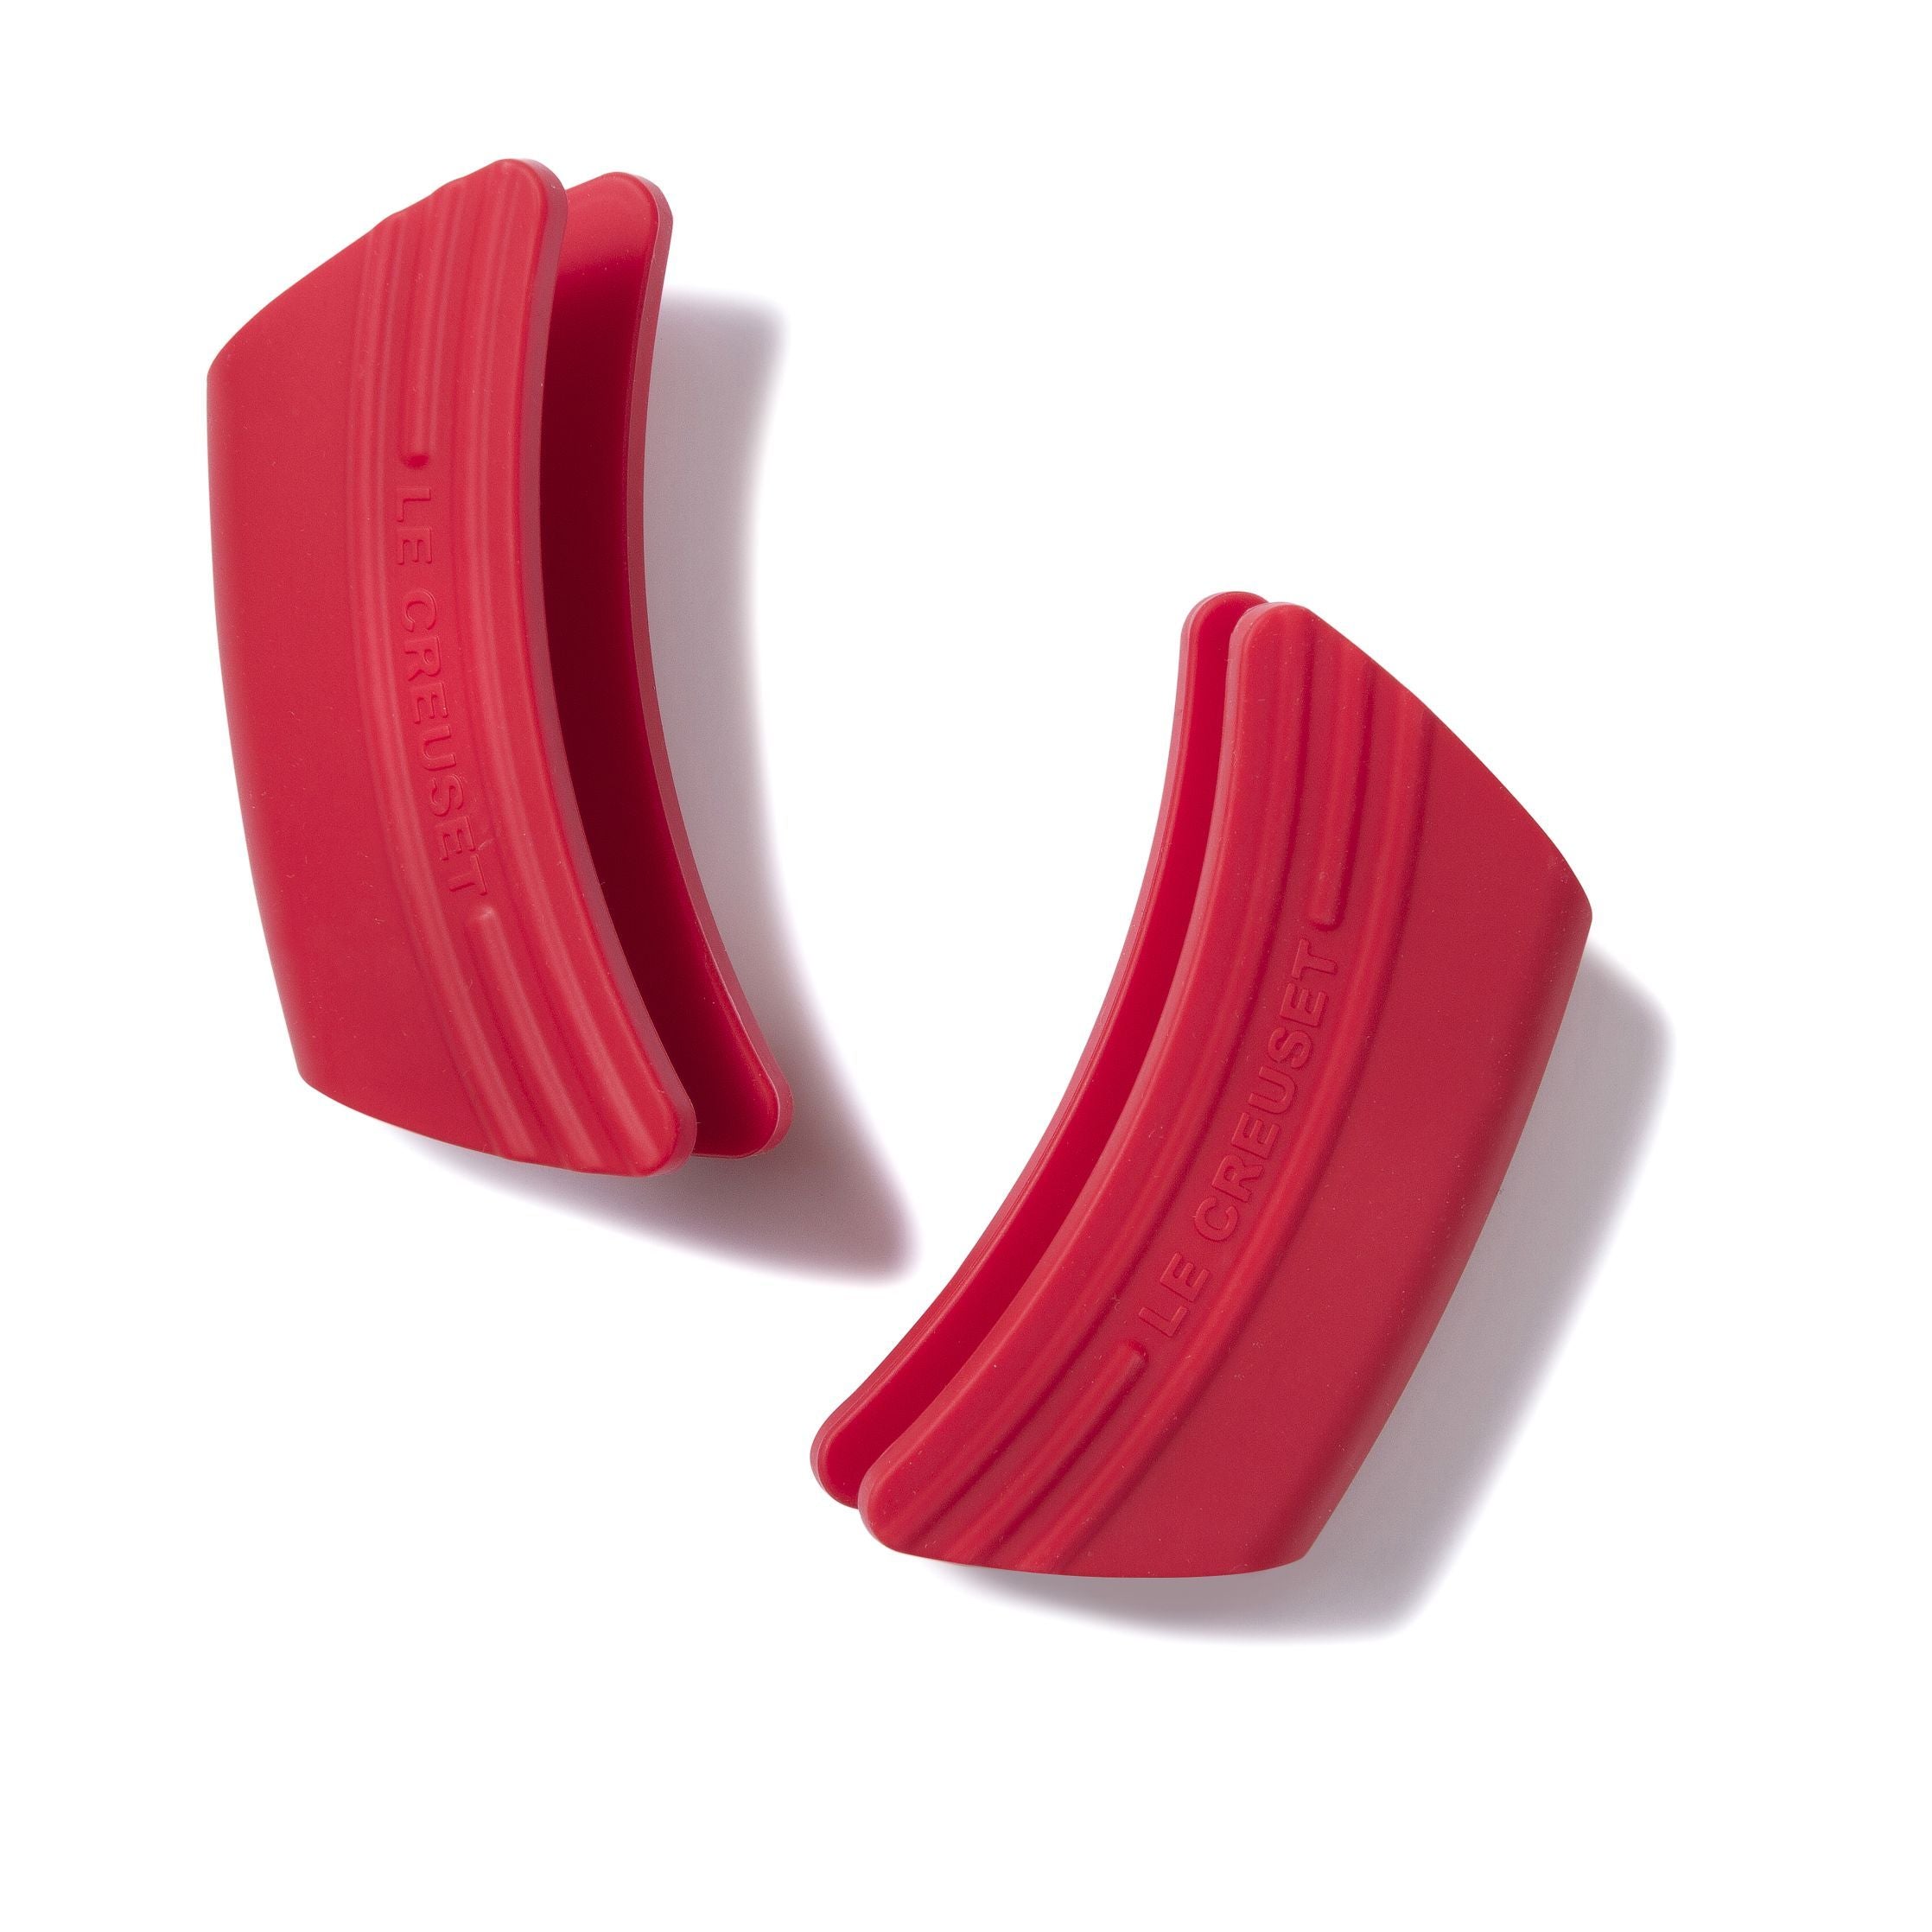 Le Creuset silicone manico di guardia 2 pezzi., Cherry Red